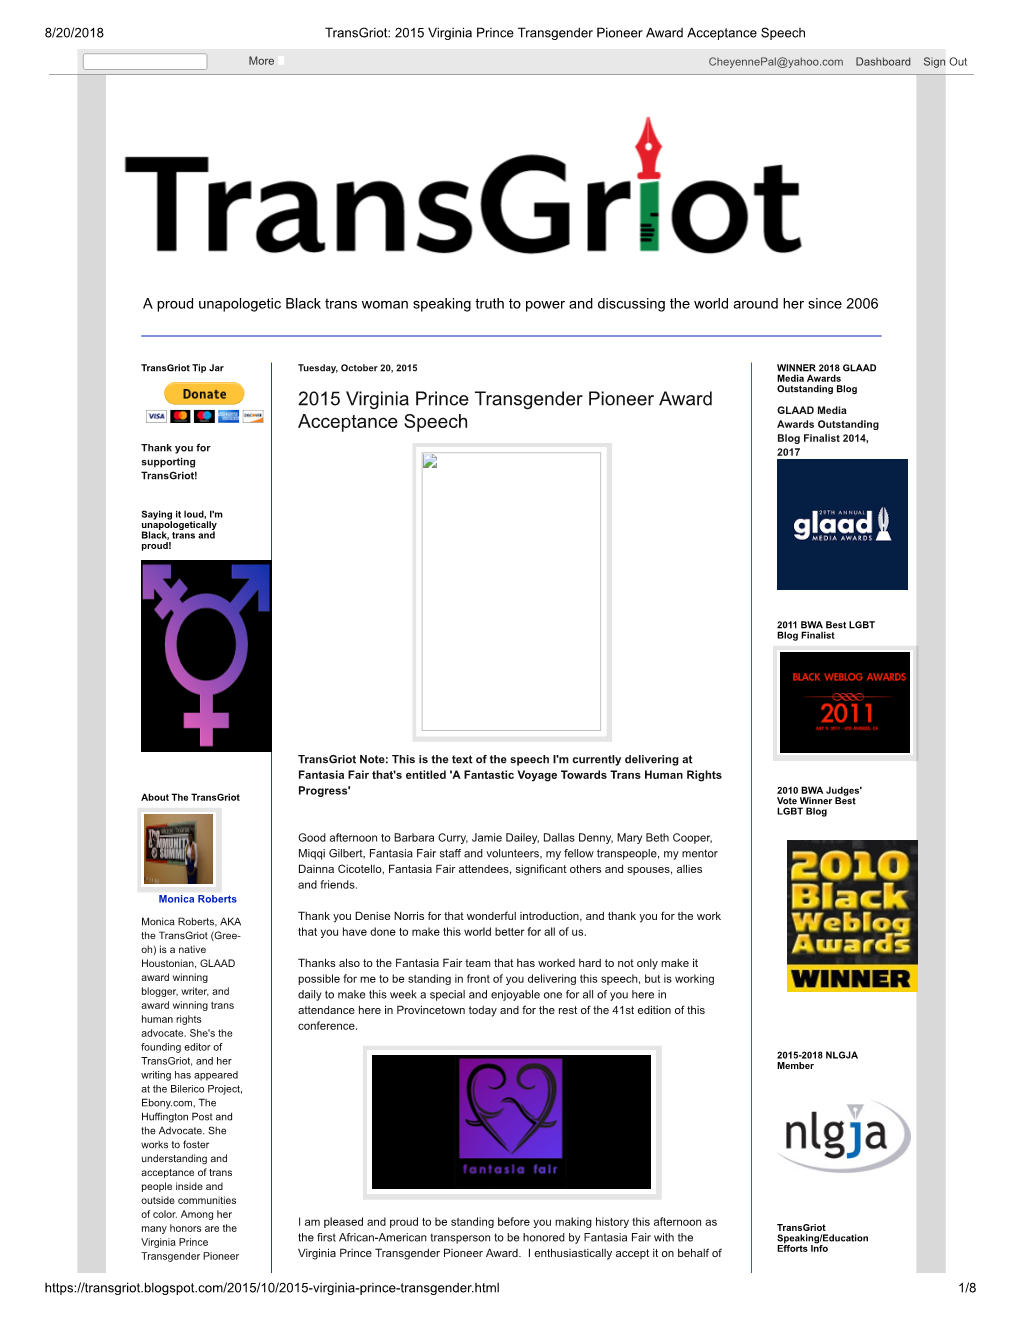 2015 Virginia Prince Transgender Pioneer Award Acceptance Speech